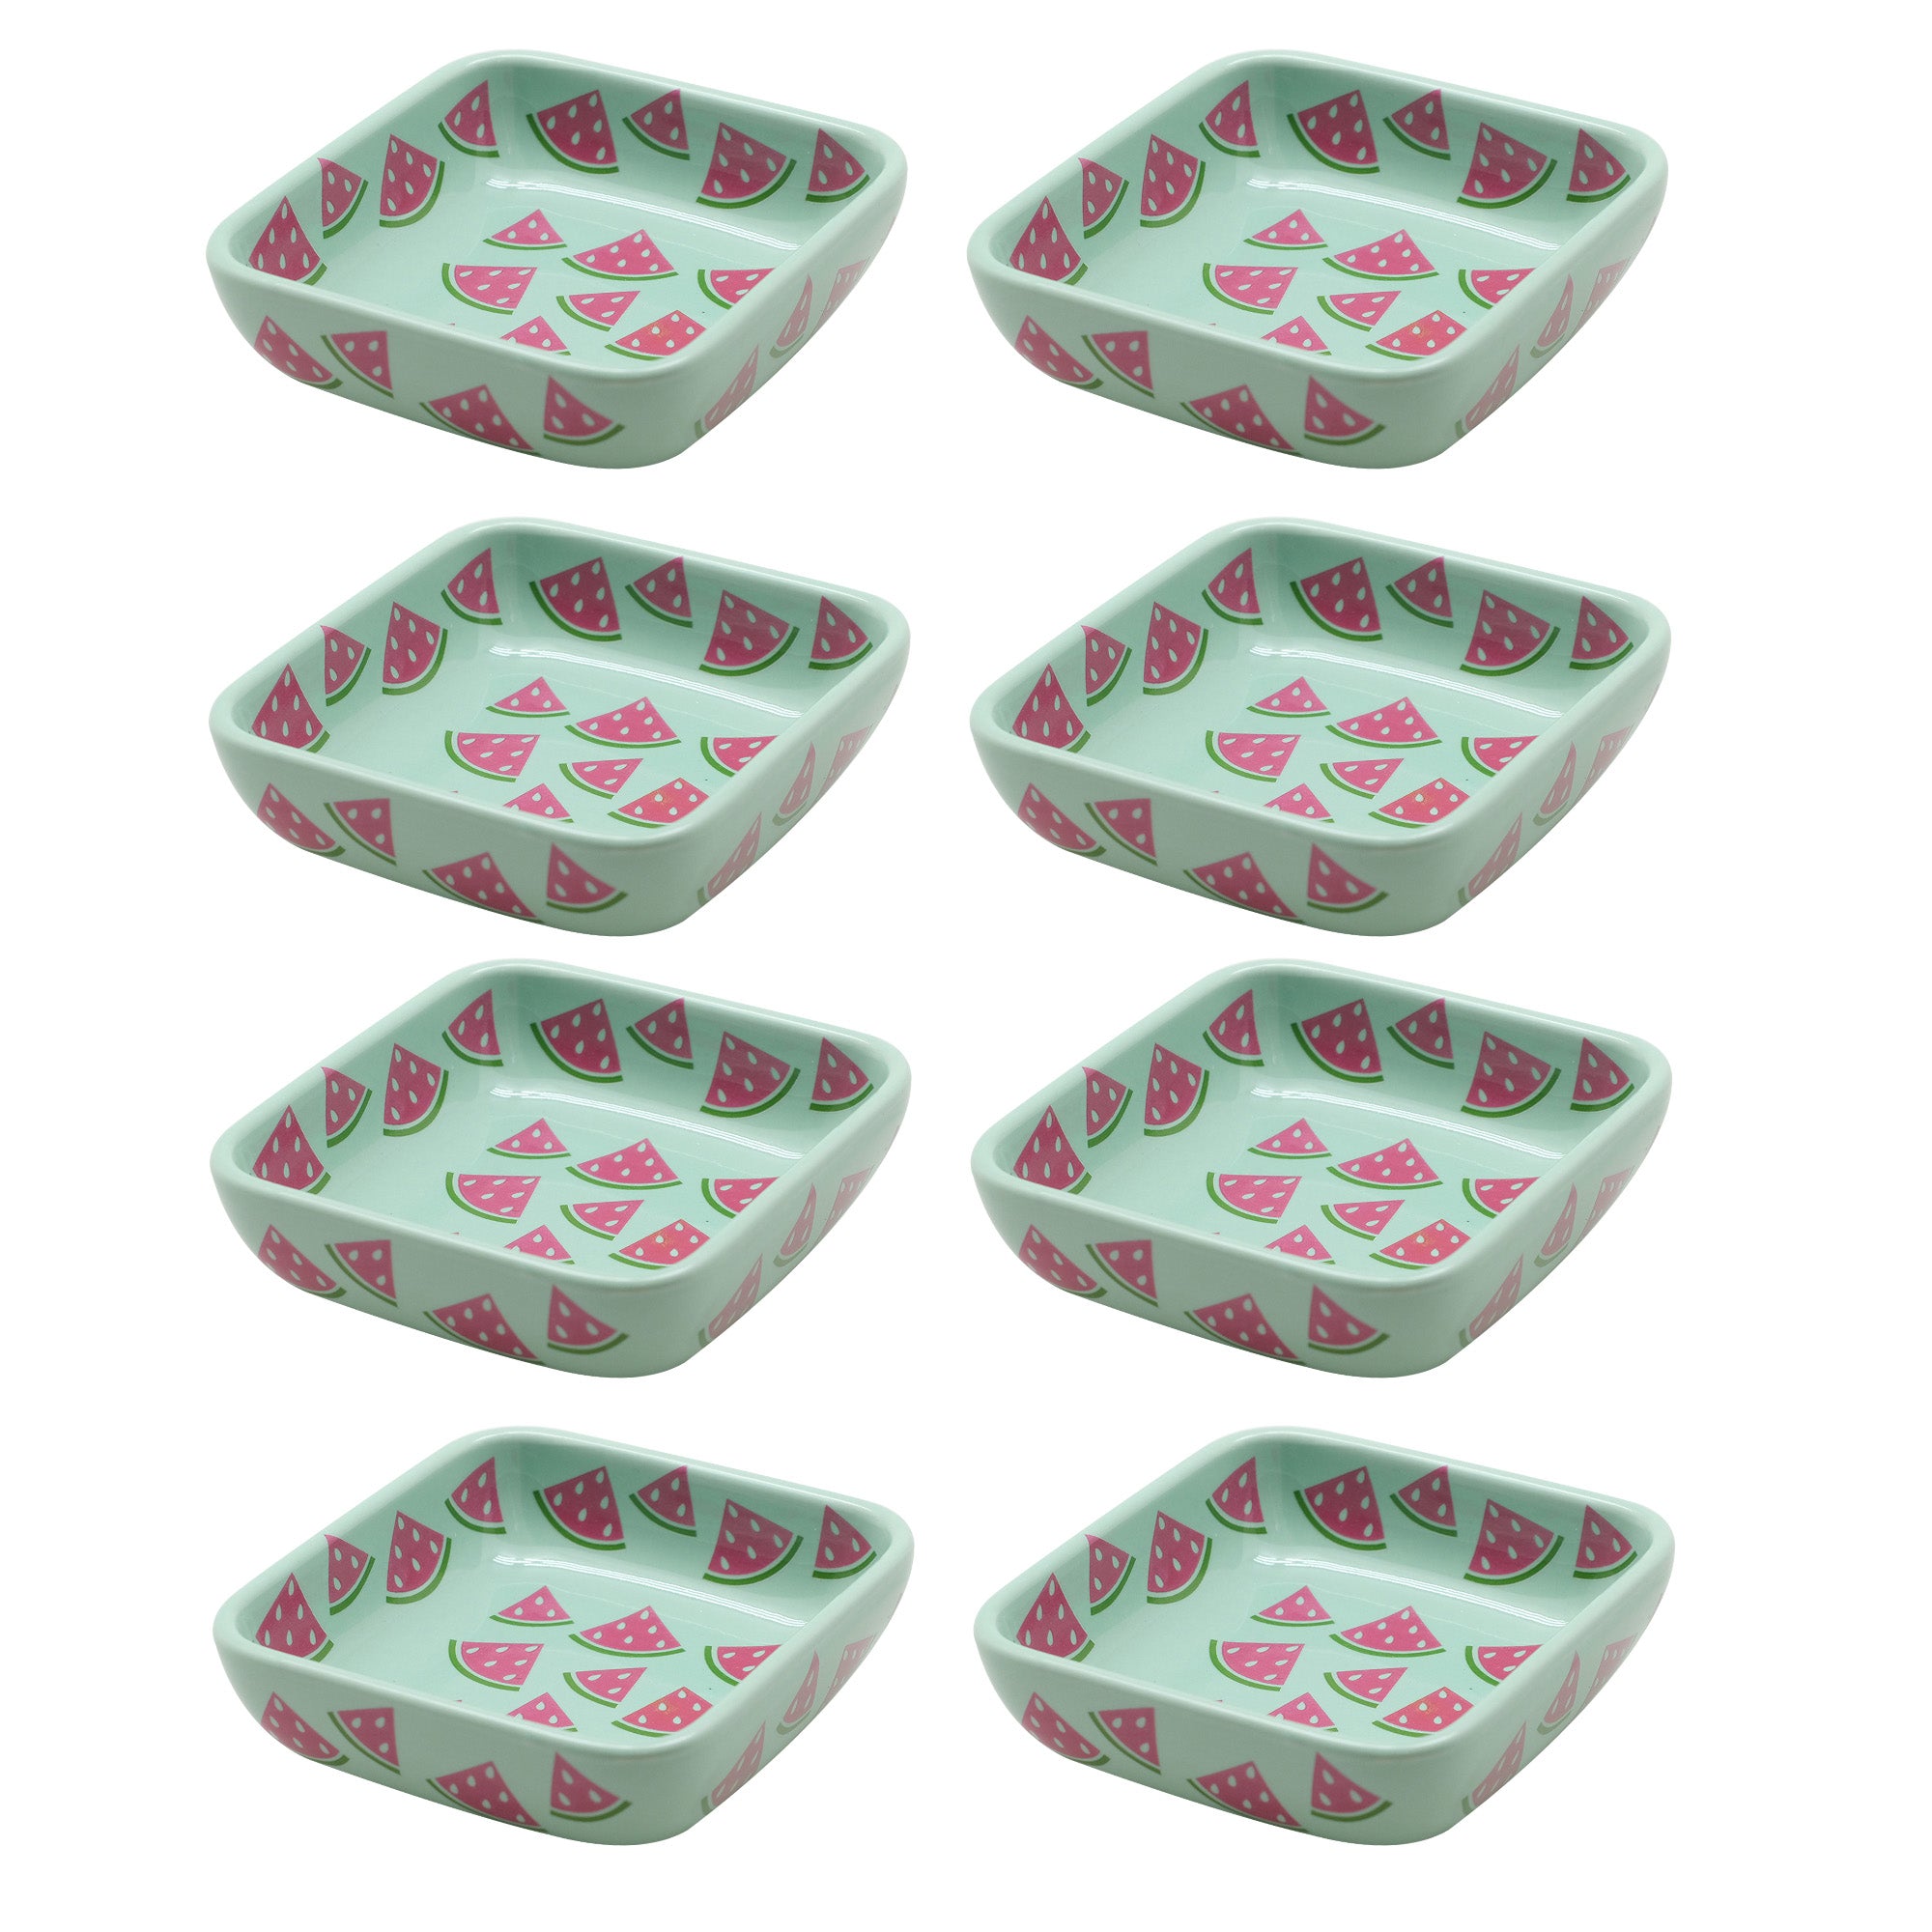 Temp-tations 4 oz Dipping Bowls, Set of 8-Watermelon